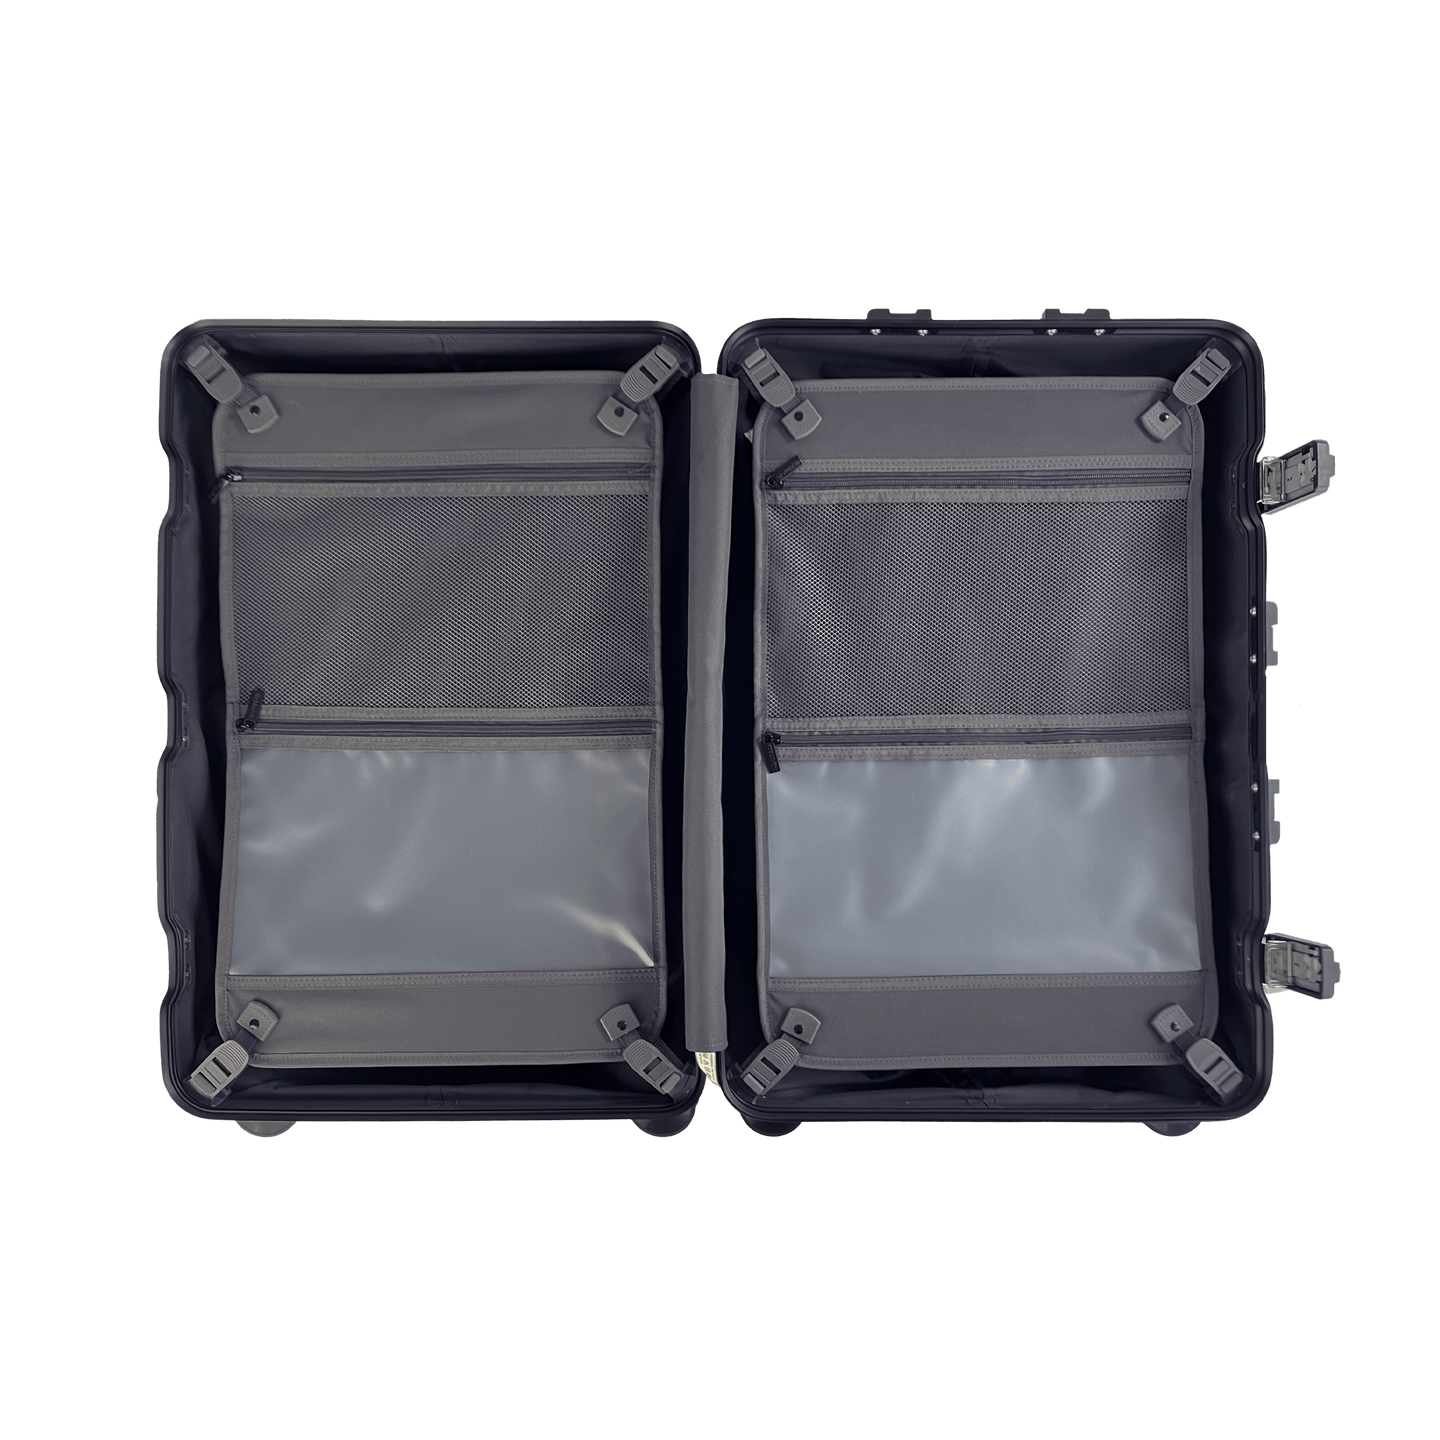 Flightmode Luggage & Bags Flightmode Travel Suitcase Cabin-Black